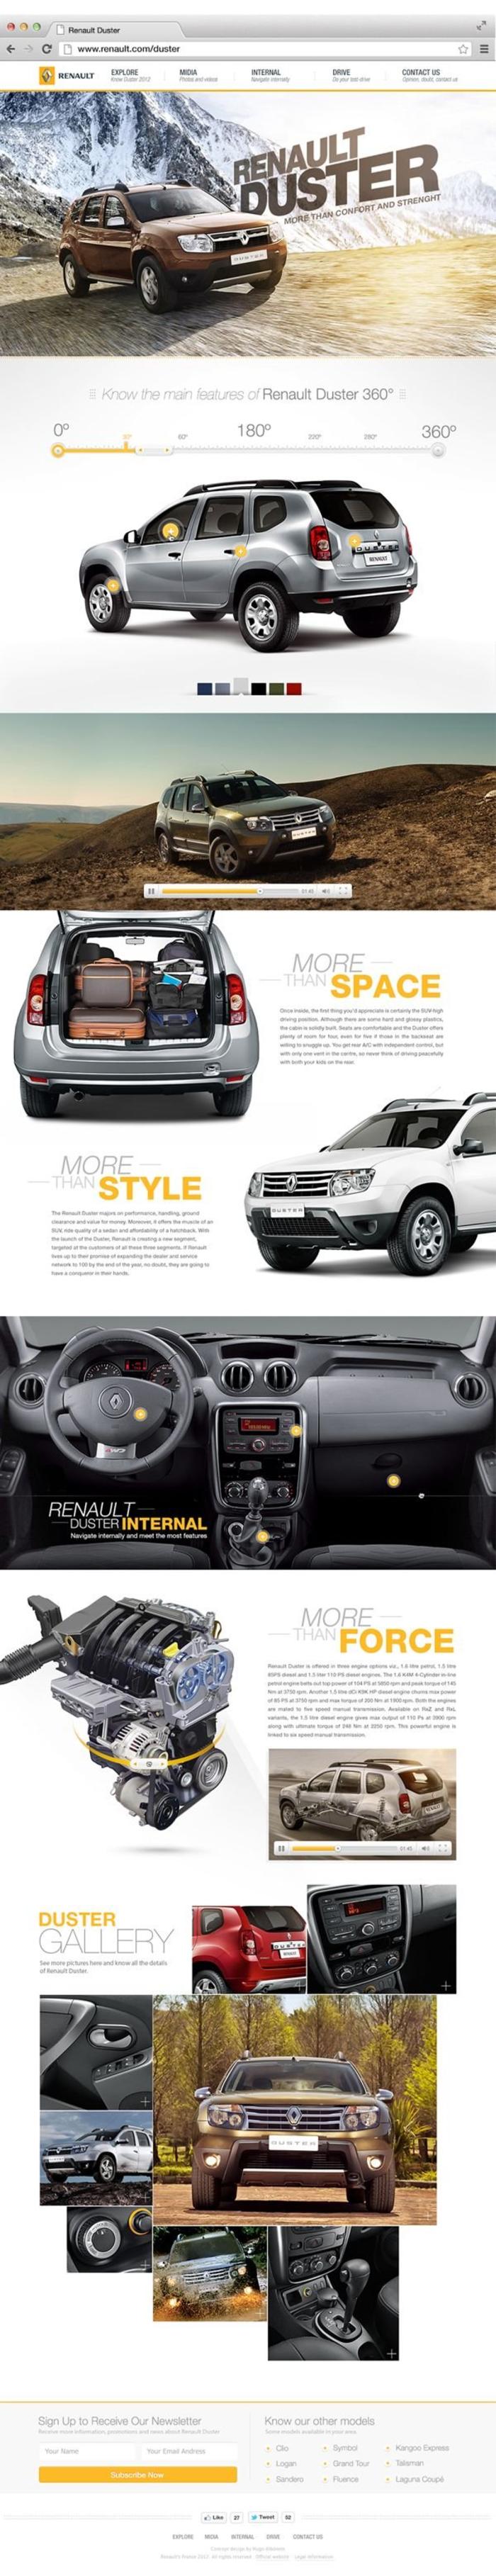 Renault Duster on Web Design Served